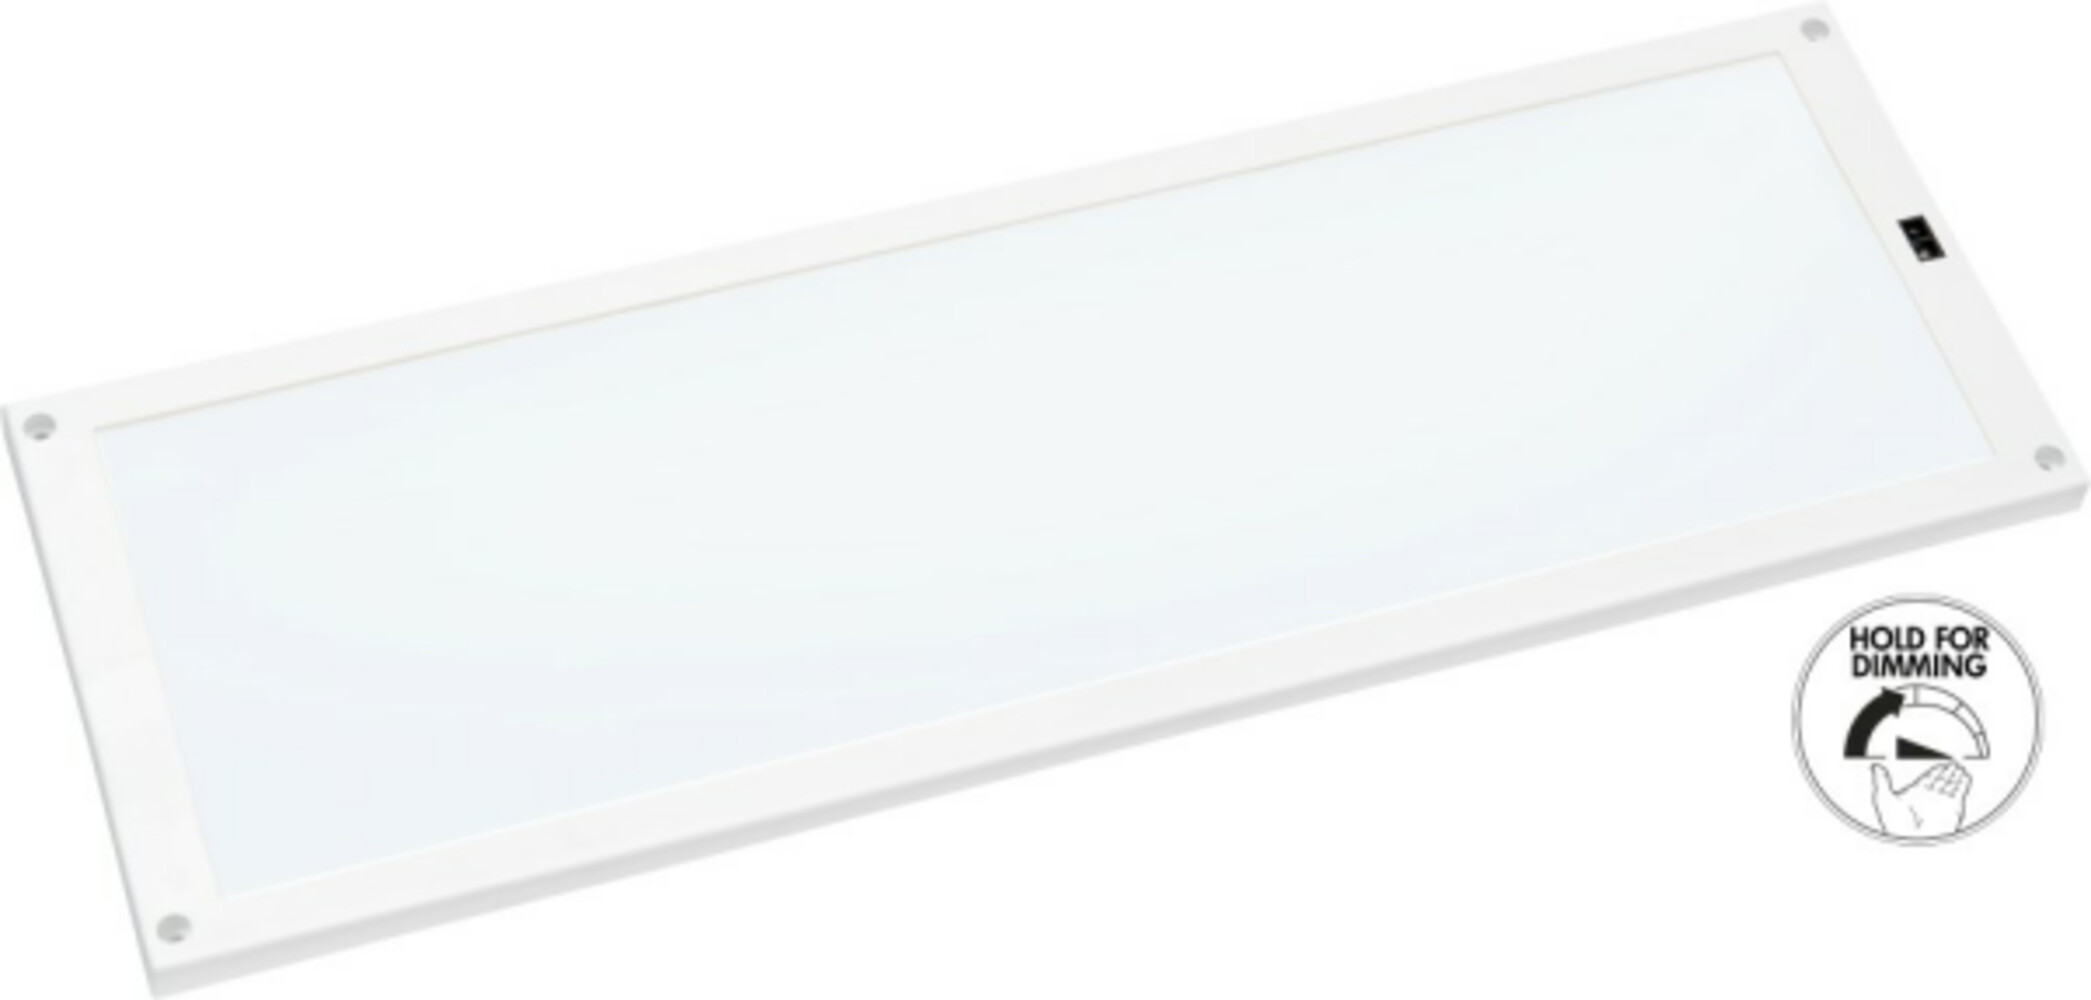 Hochwertiges LED Panel von Star Trading mit optimaler Lichtleistung und stilvollem Design